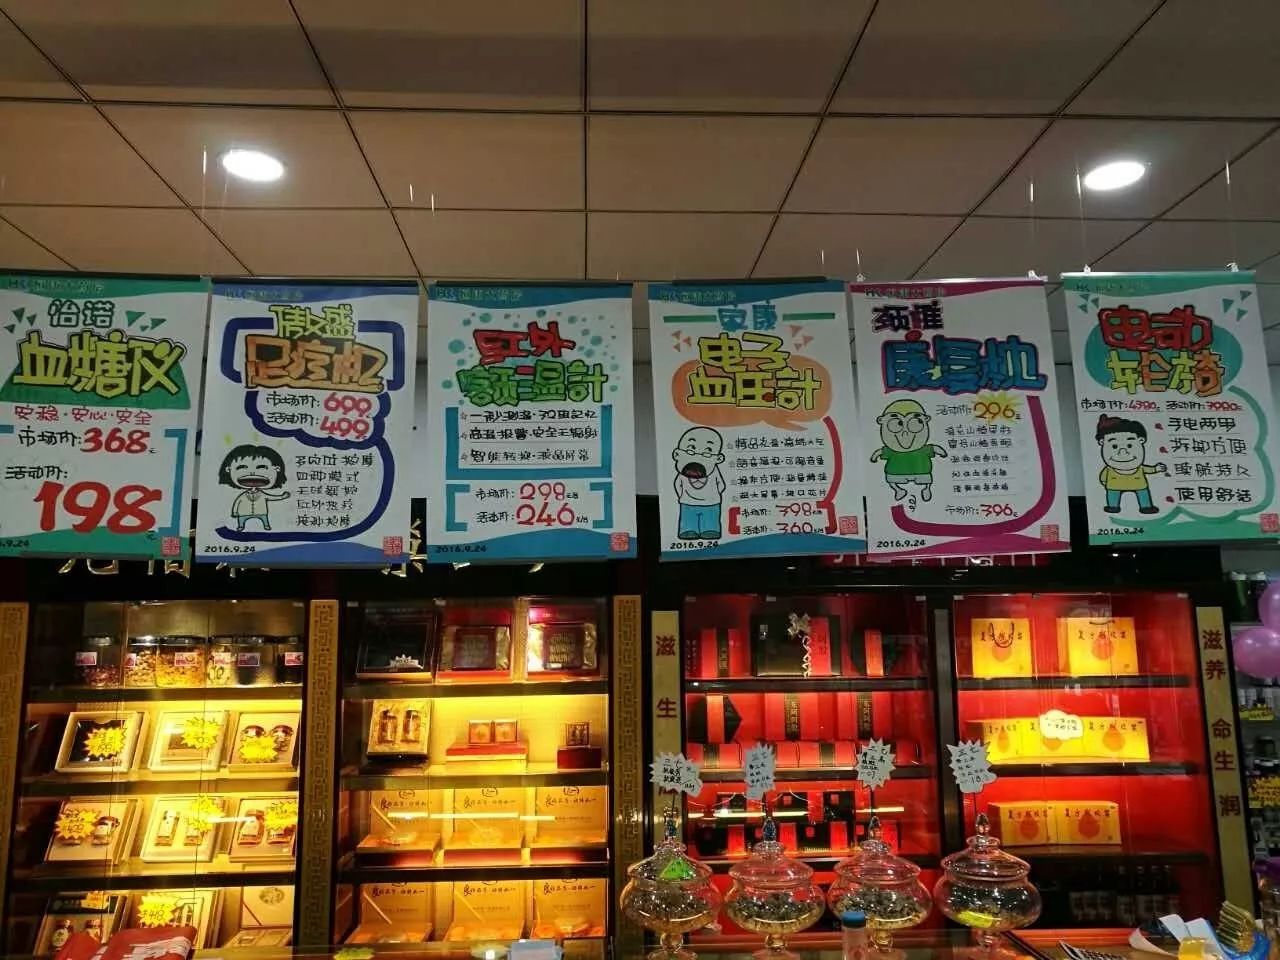 器械销售药店必须掌握的pop书写与张贴大全!|上海海报